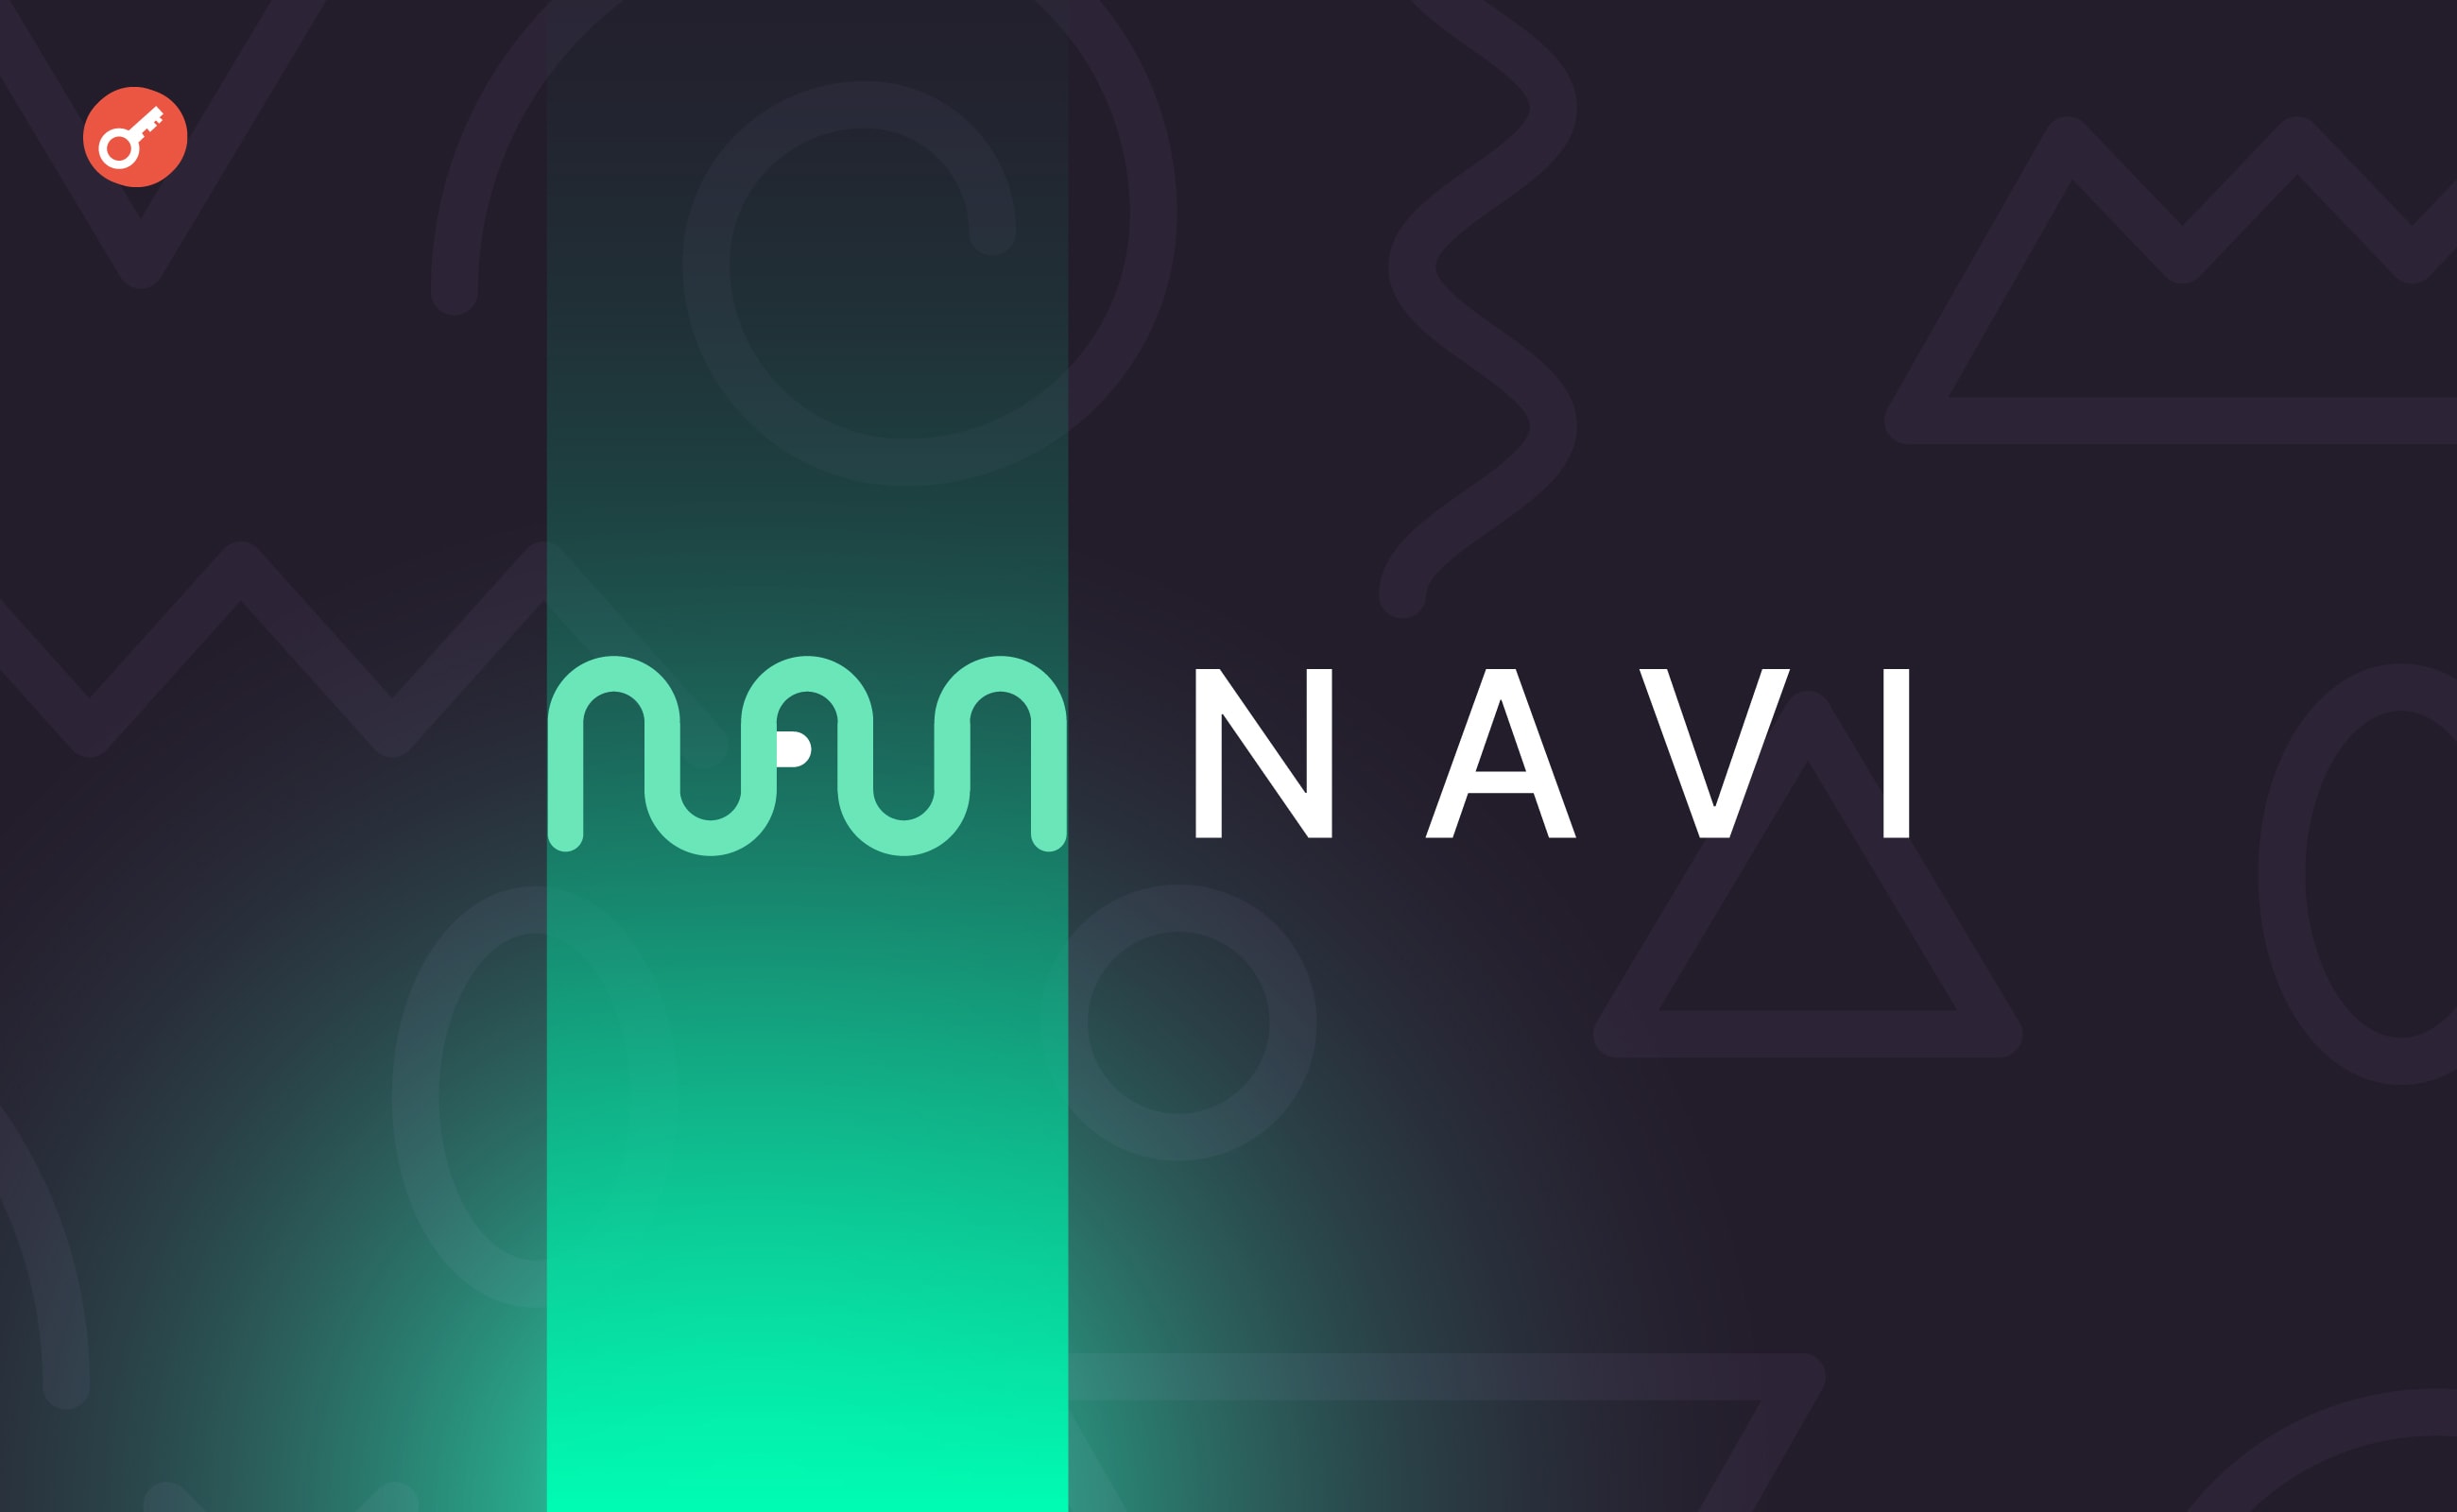 NAVI Protocol залучив $2 млн інвестицій за участю OKX Ventures. Головний колаж новини.